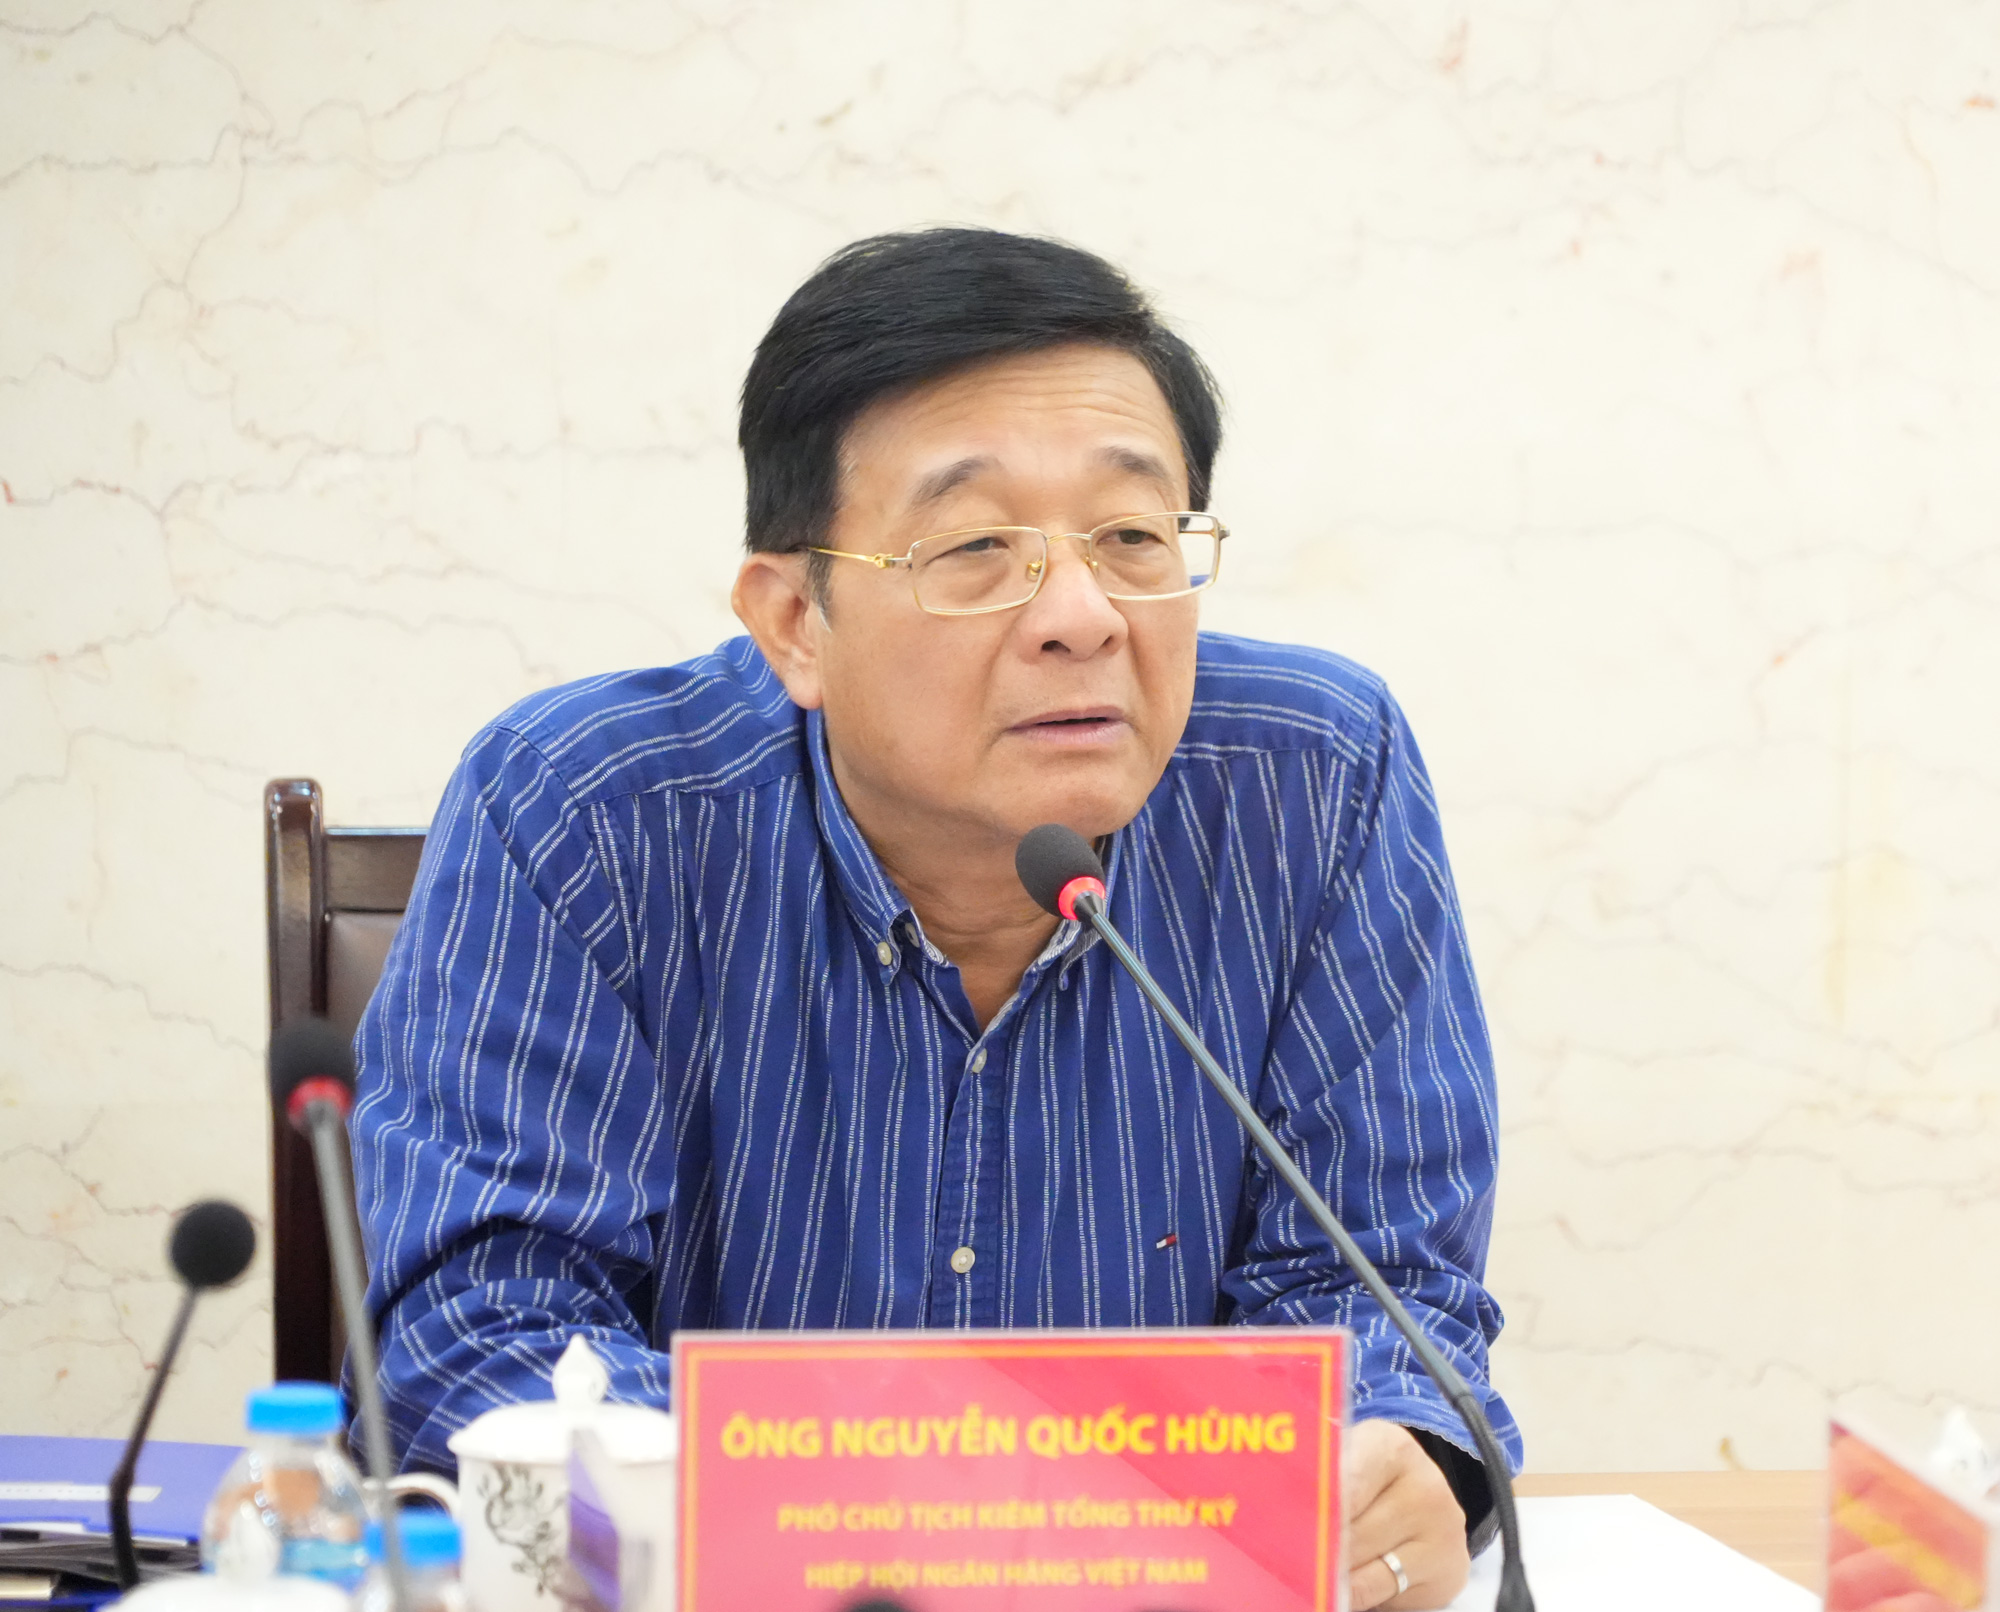 Ông Nguyễn Quốc Hùng, Phó Chủ tịch kiêm Tổng Thư ký Hiệp hội Ngân hàng Việt Nam